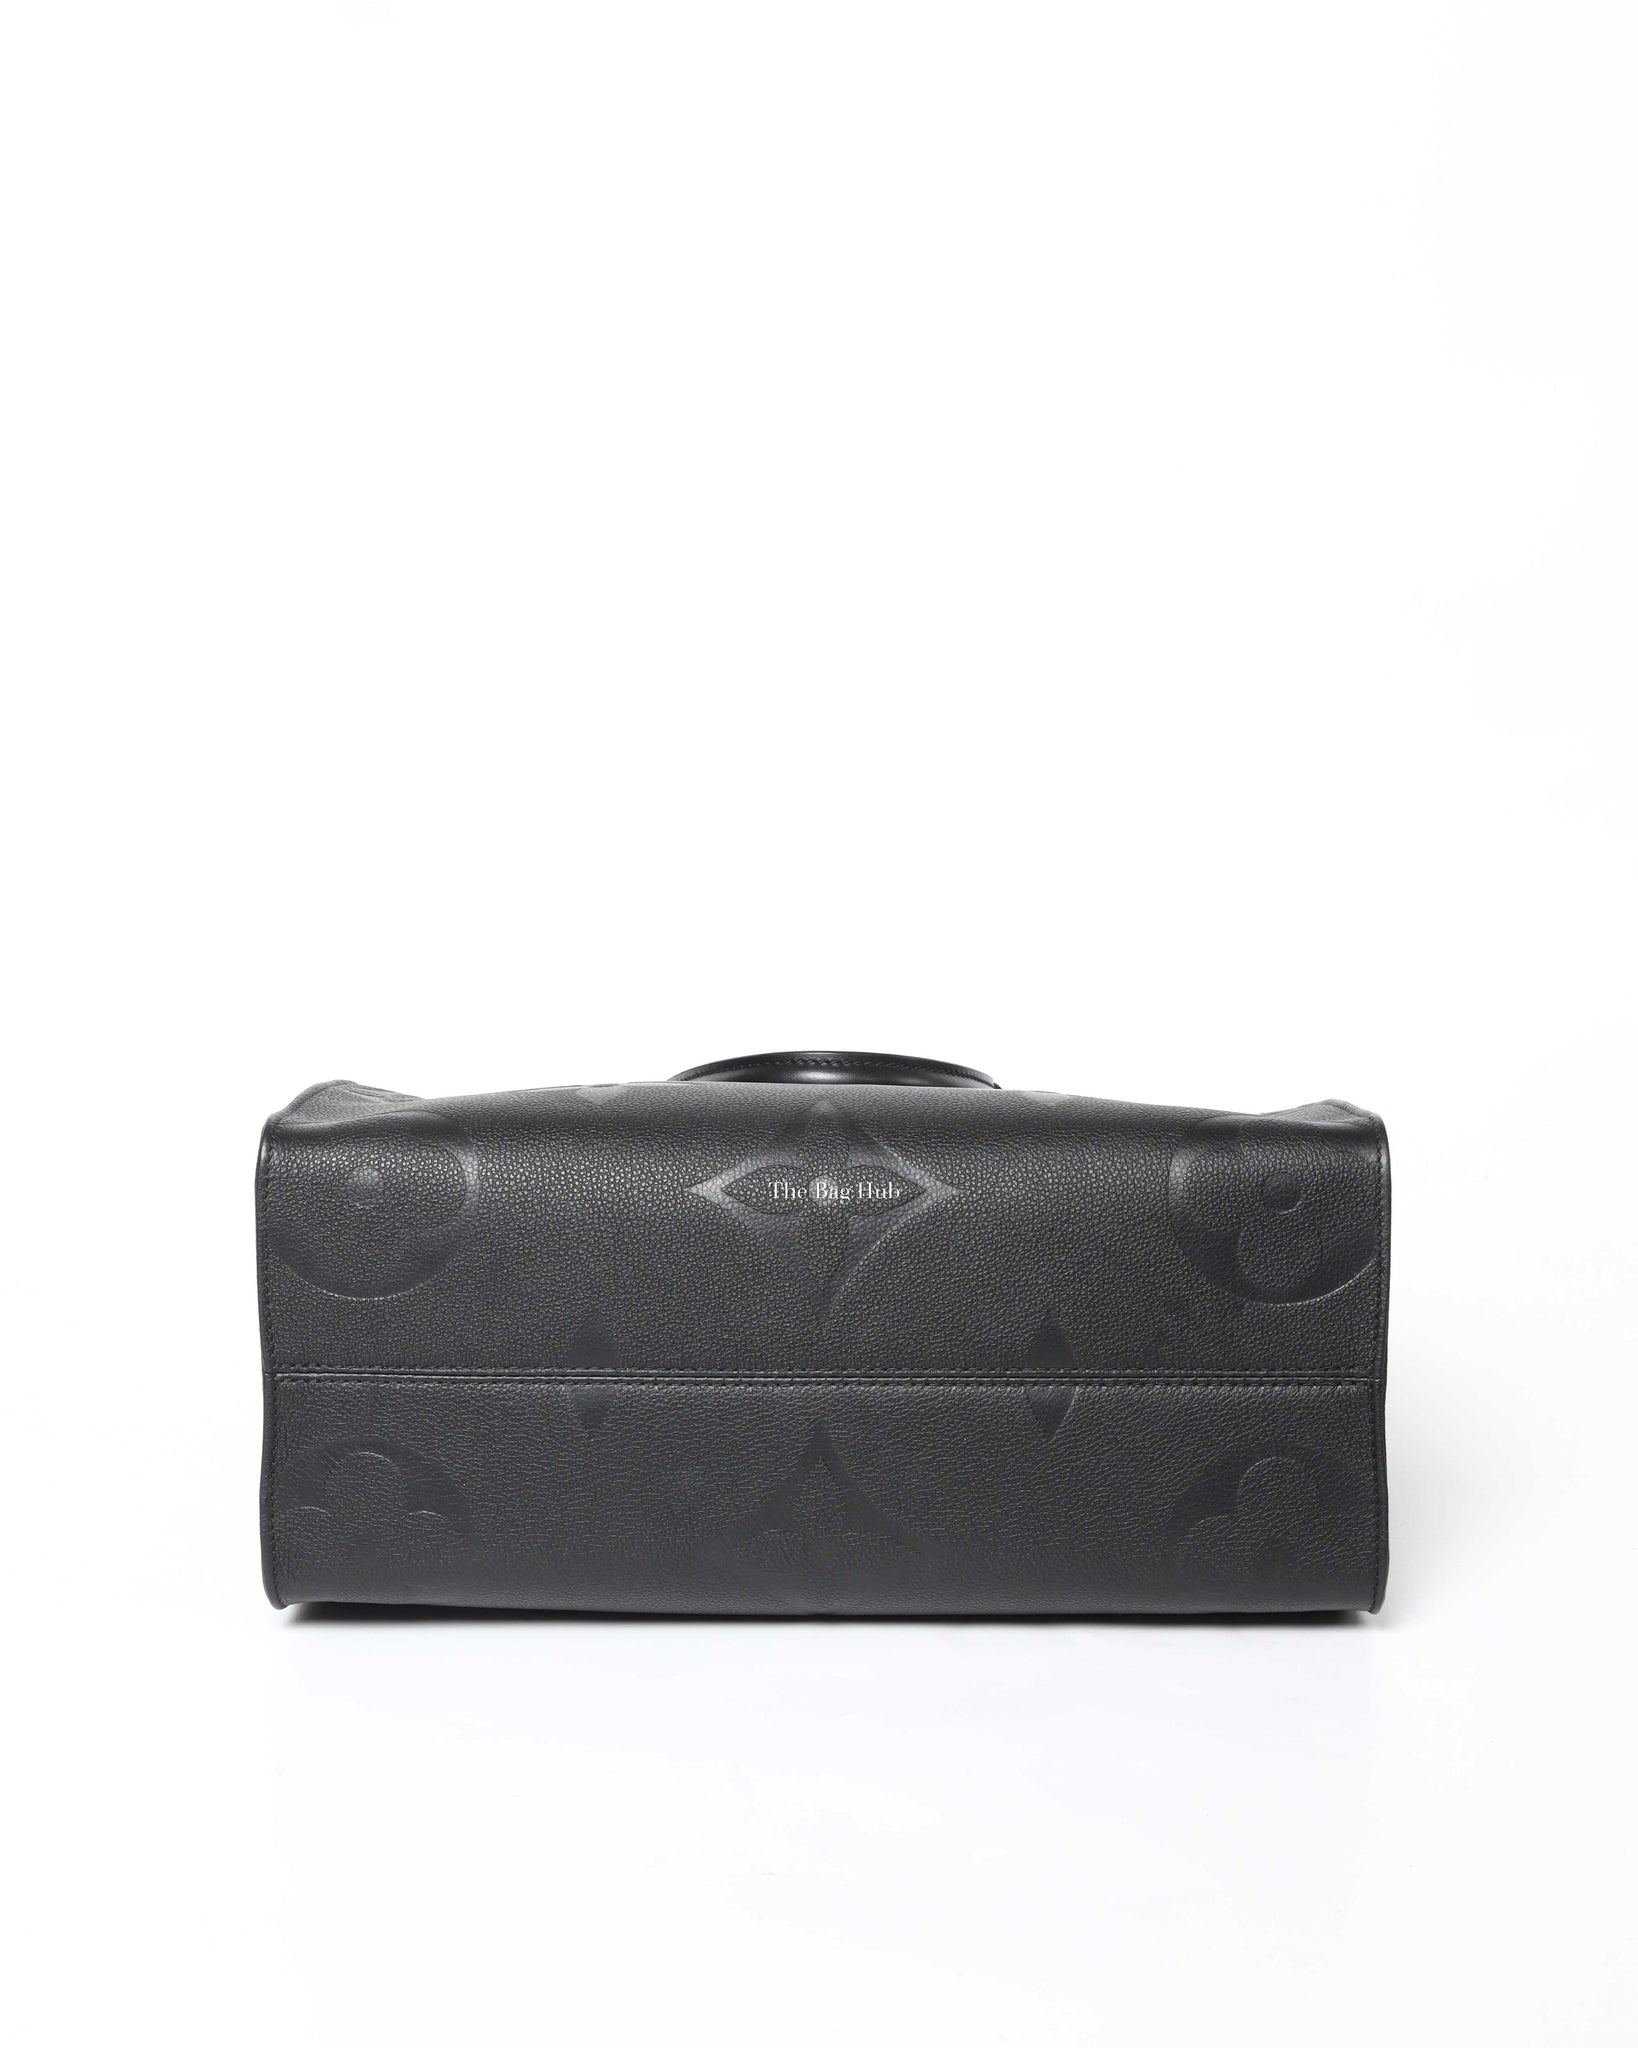 Louis Vuitton Monogram Empreinte Onthego mm 2021 Ss, Black